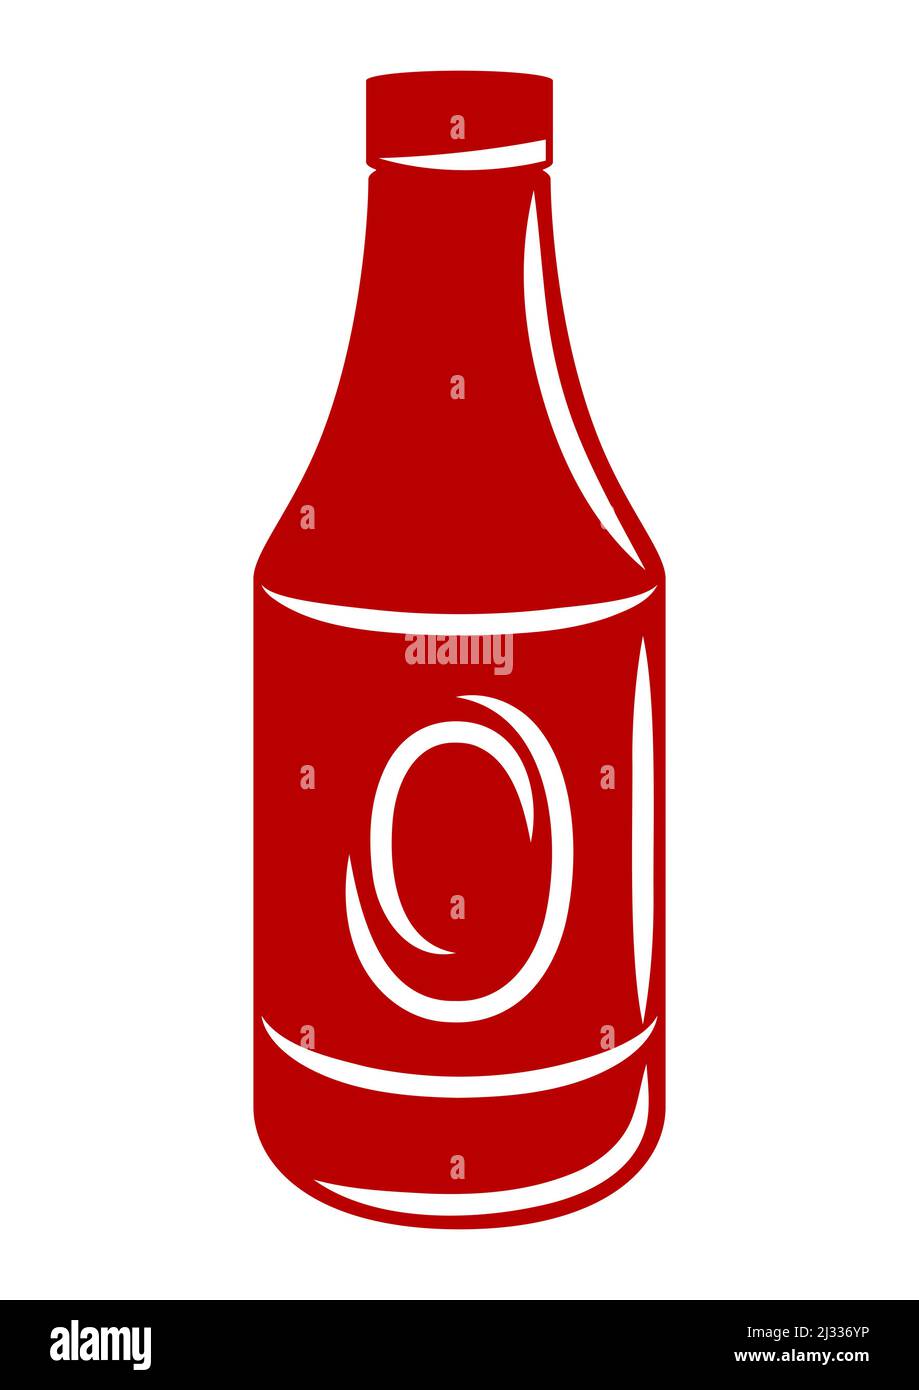 Abbildung einer Flasche mit Ketchup-Sauce. Küche und Restaurant Produkt. Stock Vektor